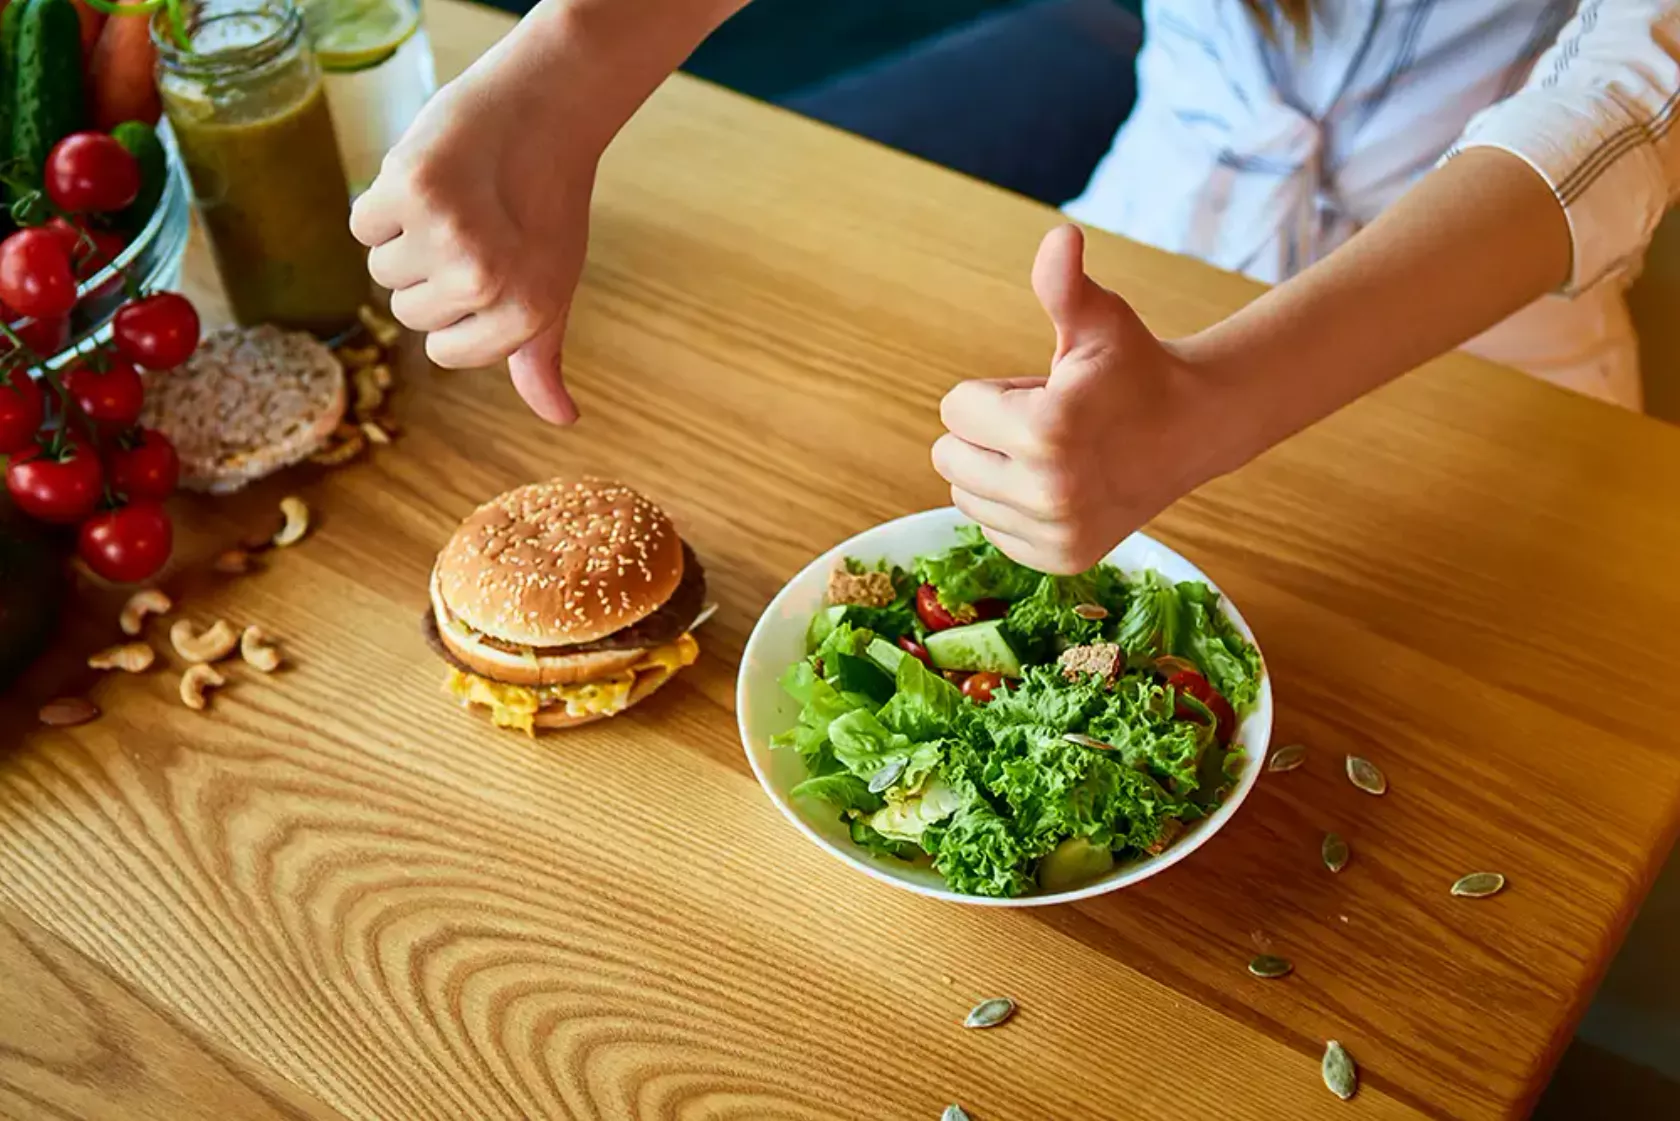 Auf einem Tisch ein Burger und ein Salat und eine Person macht Handzeichen dazu - Daumen runter, Daumen rauf.